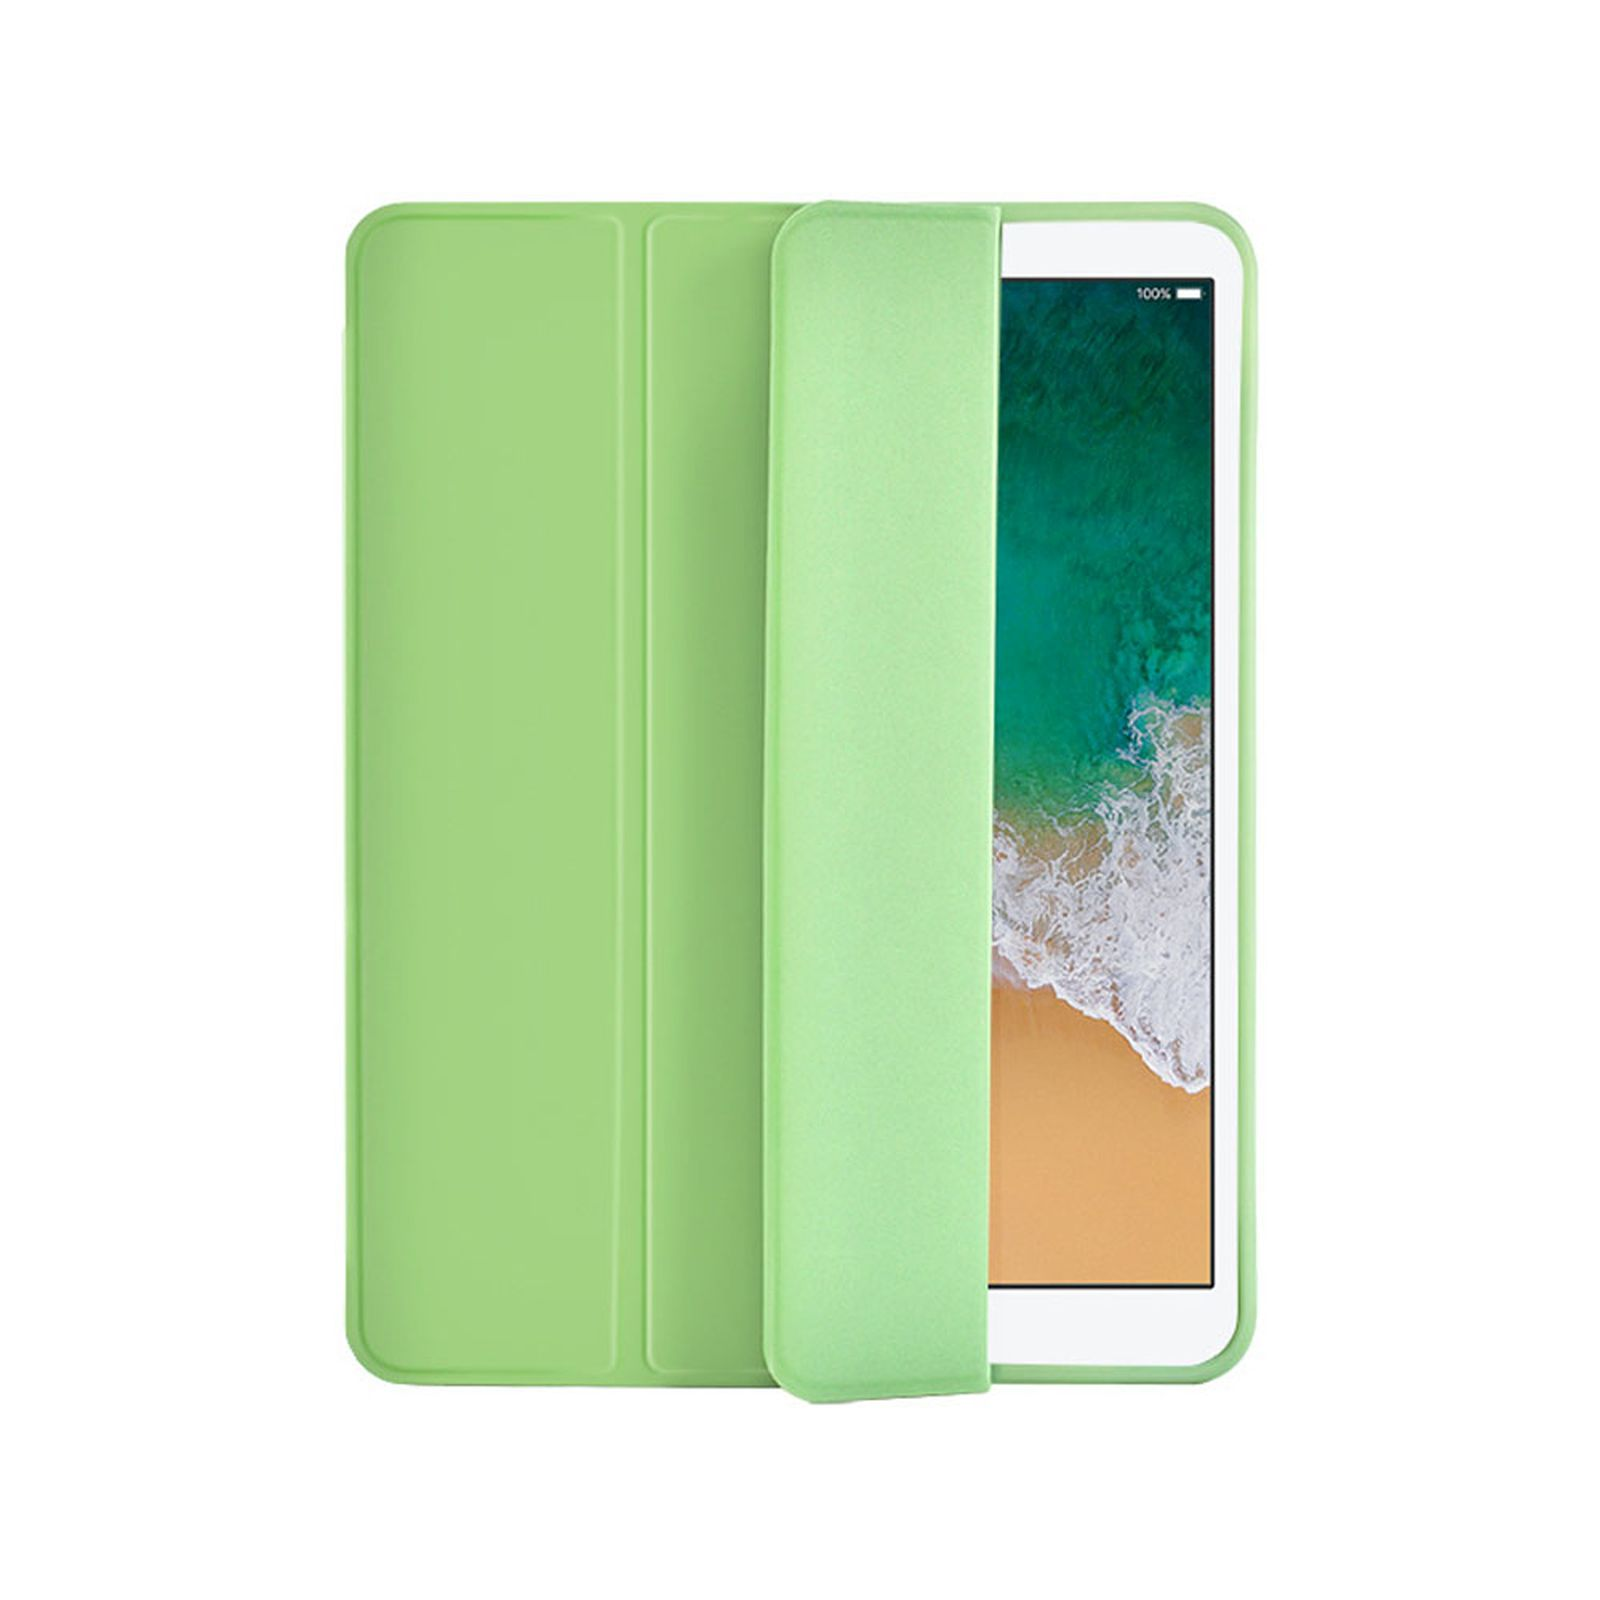 LOBWERK Hülle Schutzhülle 12.9 Bookcover iPad 2020 Kunststoff, Grün für Pro Apple